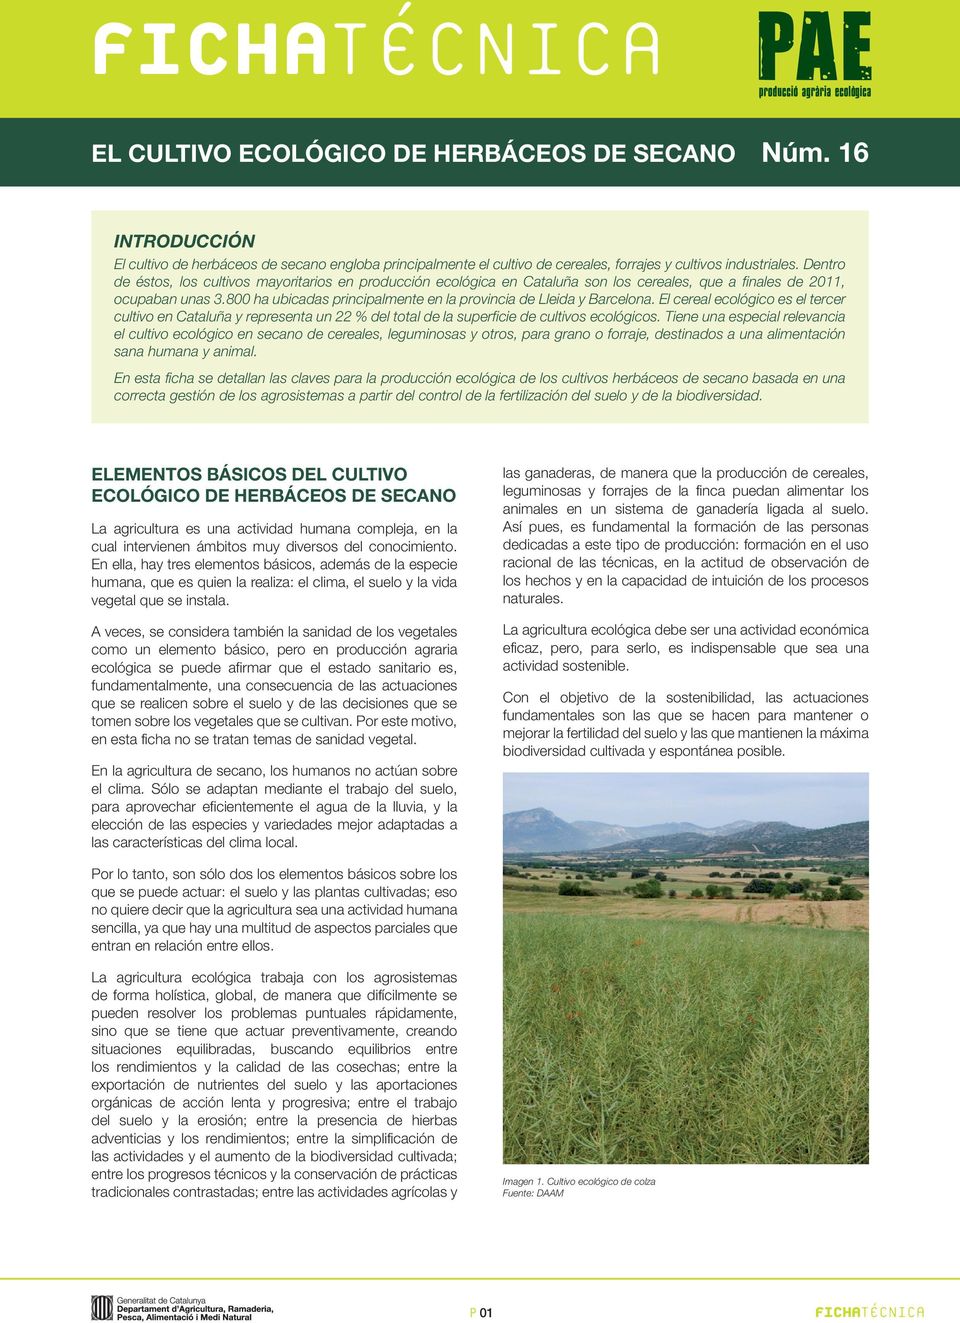 800 ha ubicadas principalmente en la provincia de Lleida y Barcelona. El cereal ecológico es el tercer cultivo en Cataluña y representa un 22 % del total de la superficie de cultivos ecológicos.